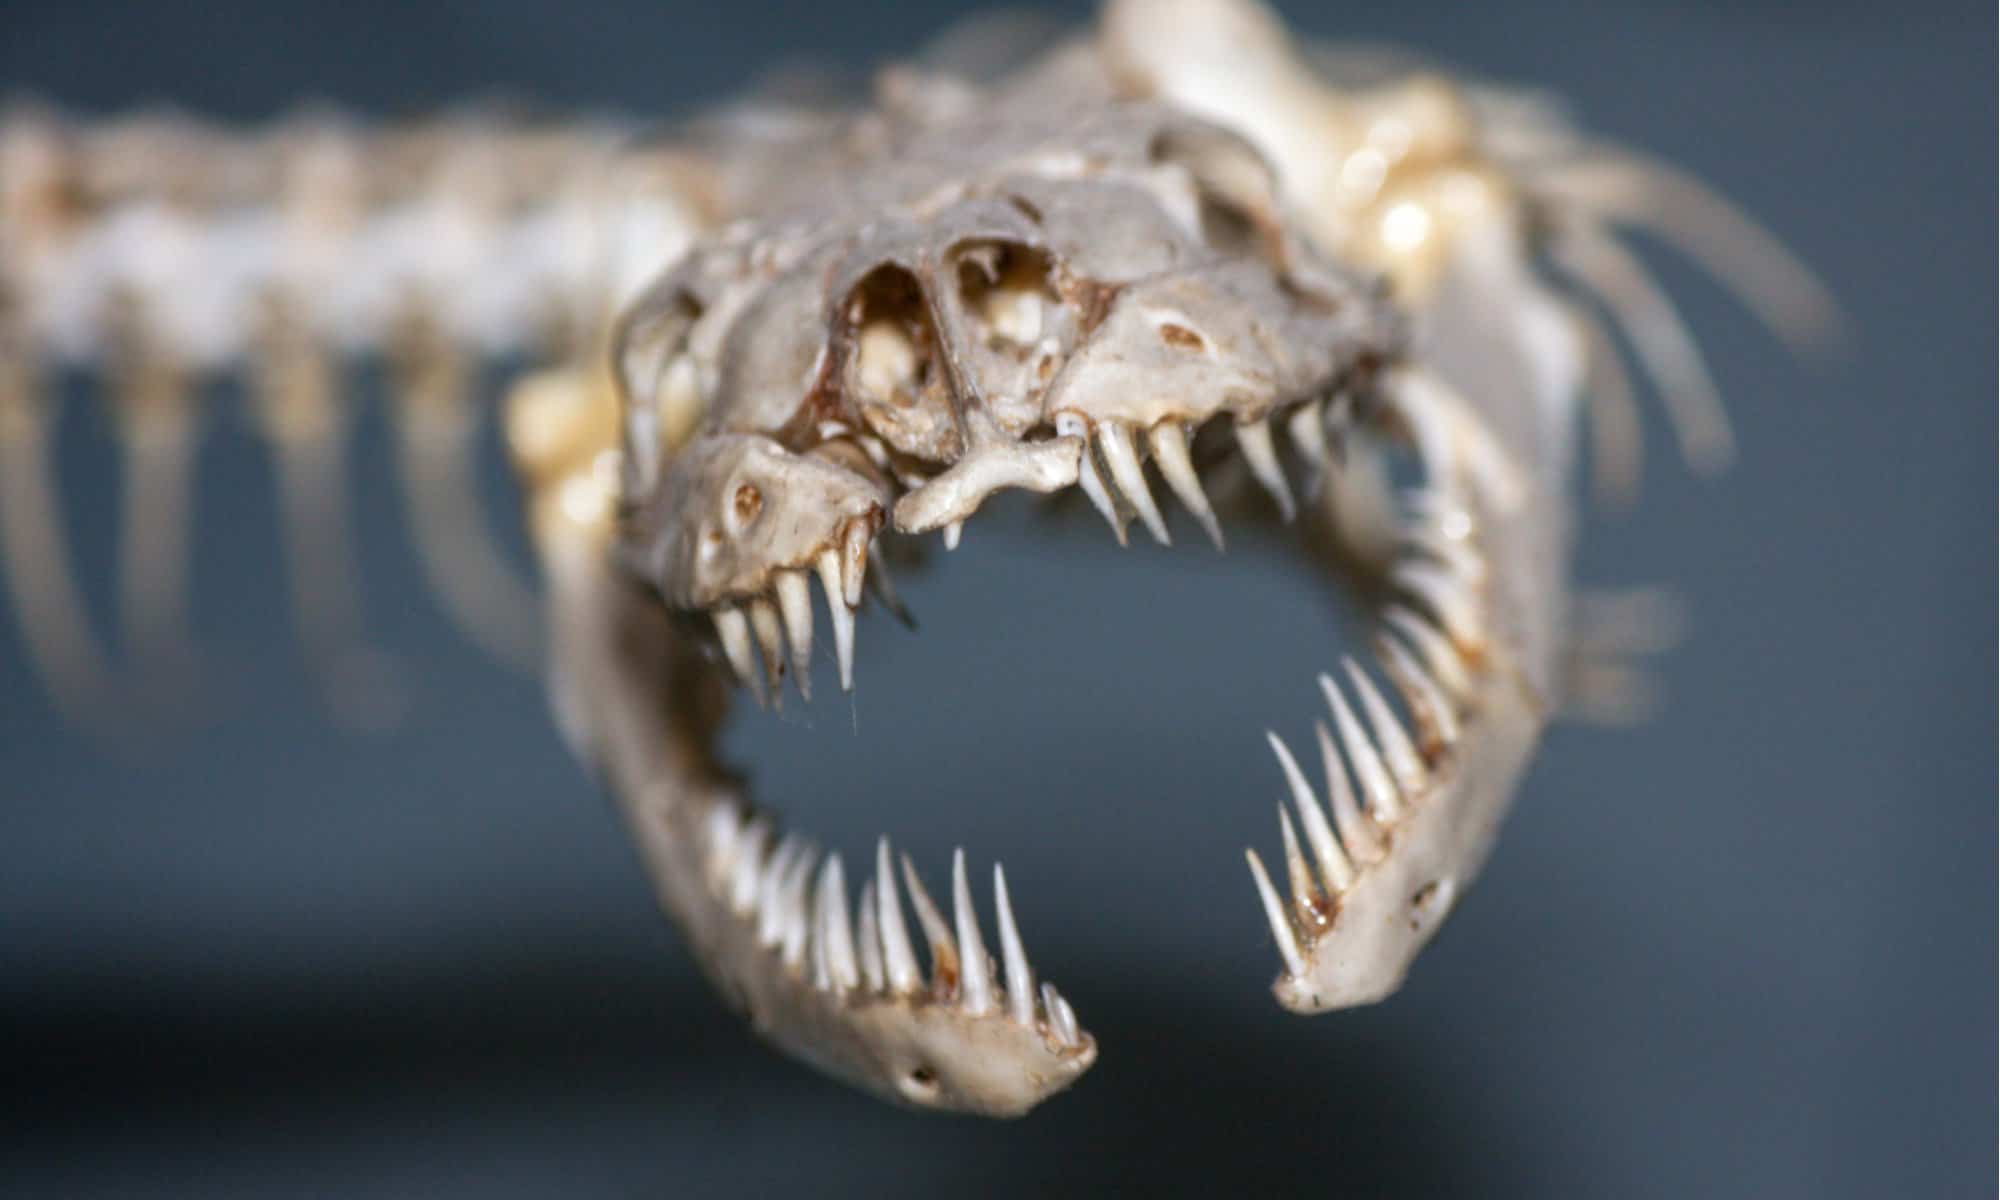 Snake skulls show how species adapt to prey